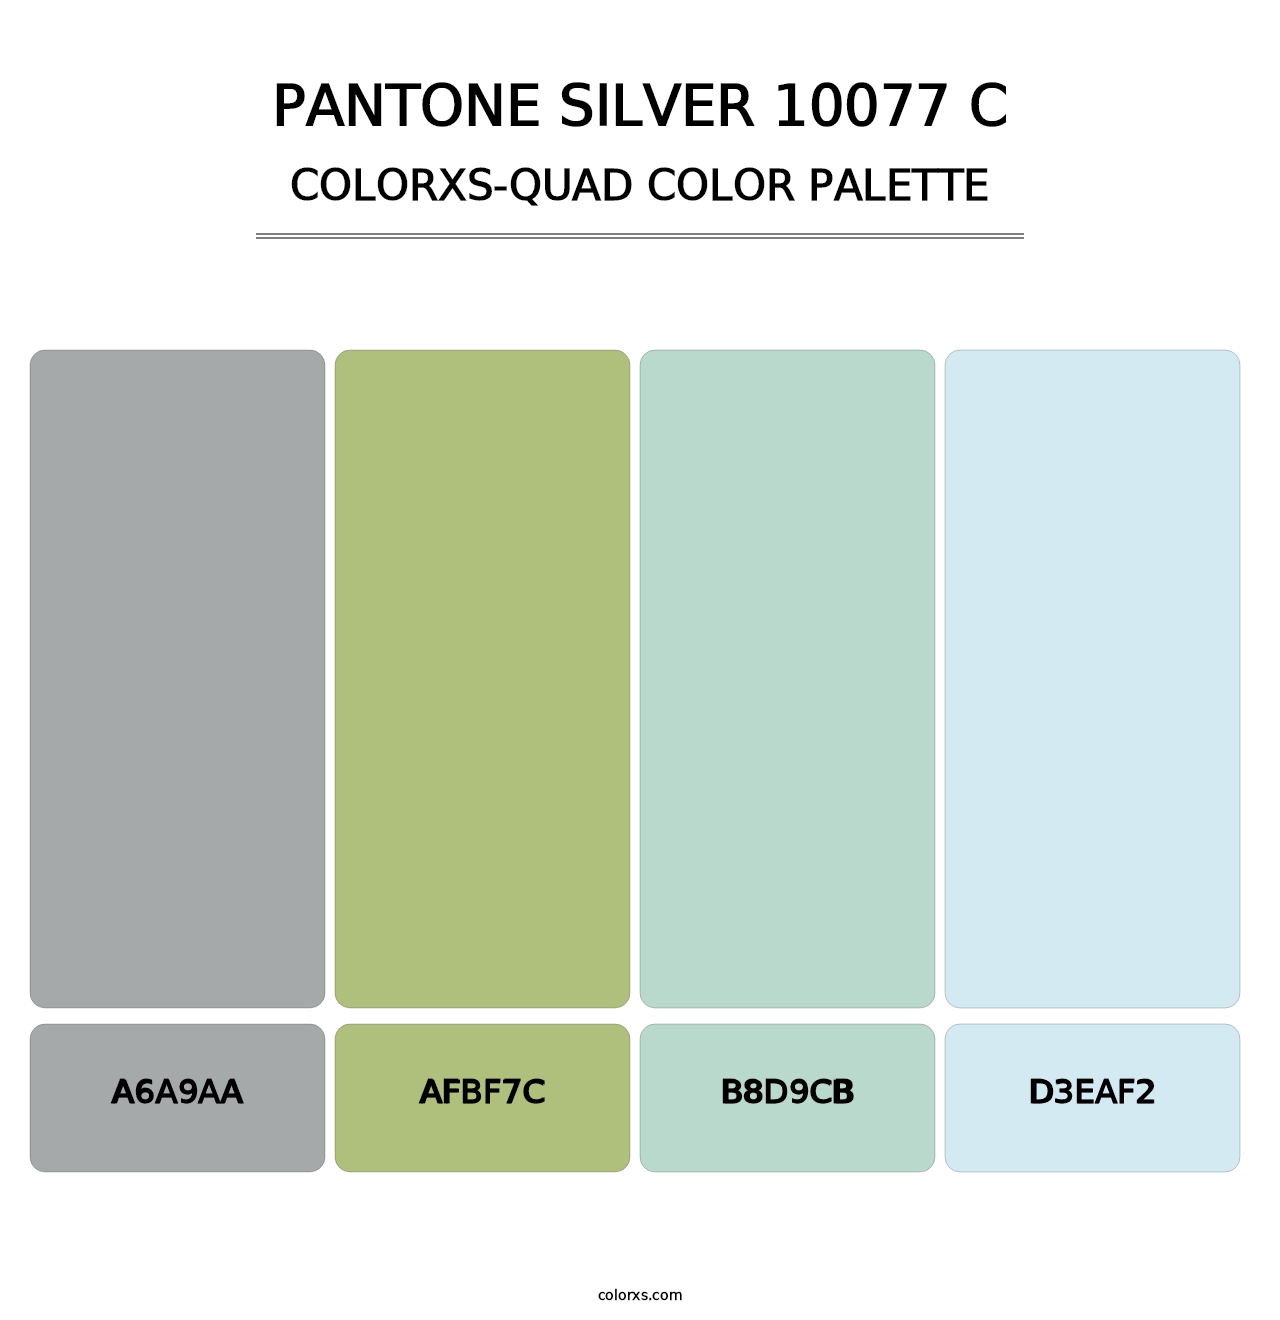 PANTONE Silver 10077 C - Colorxs Quad Palette